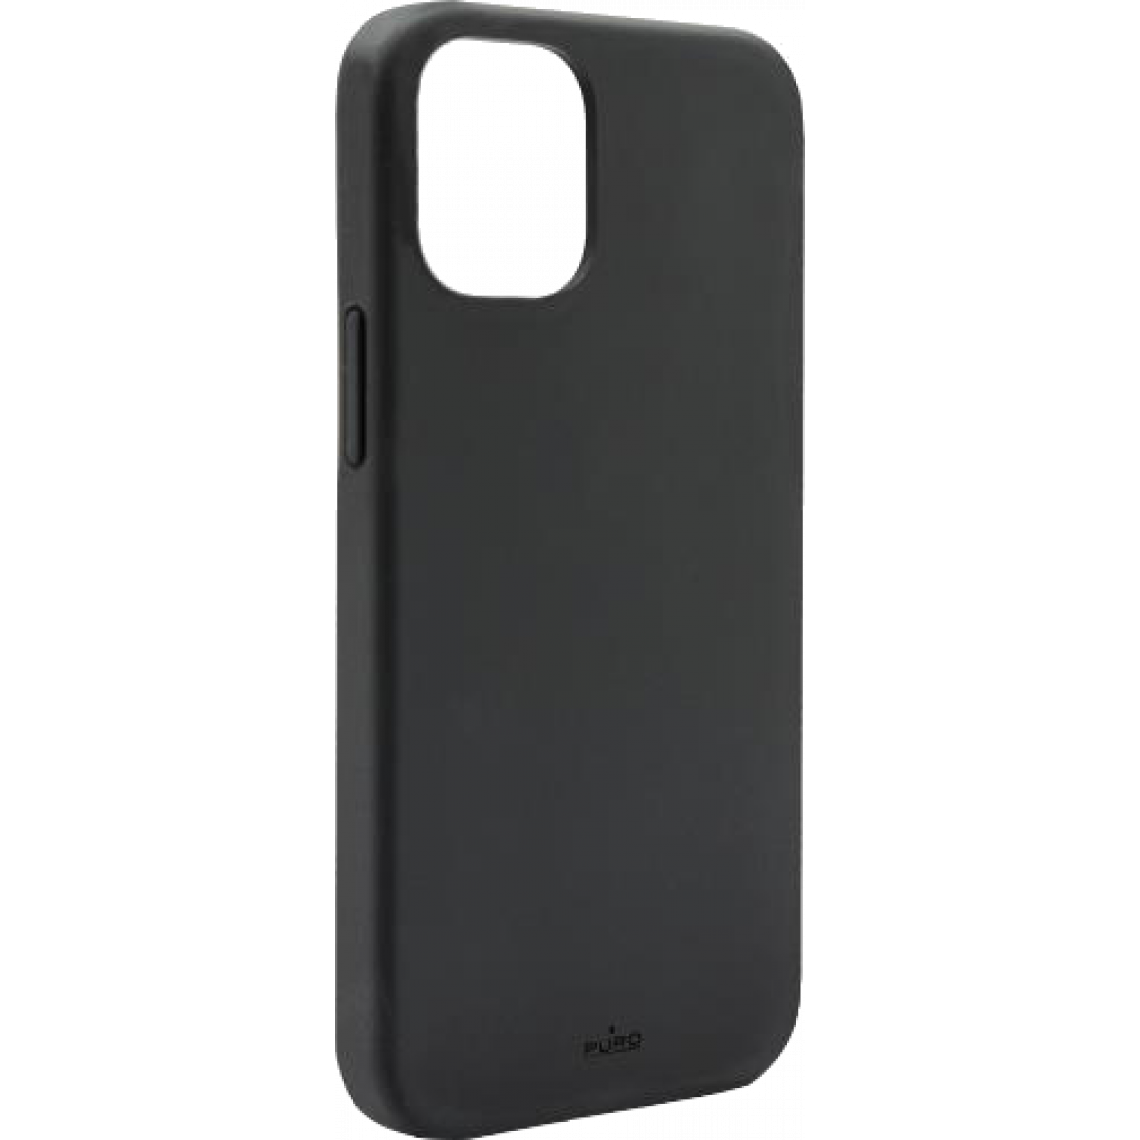 Puro - Coque Silicone Icon Noire pour iPhone 12 mini Puro - Coque, étui smartphone